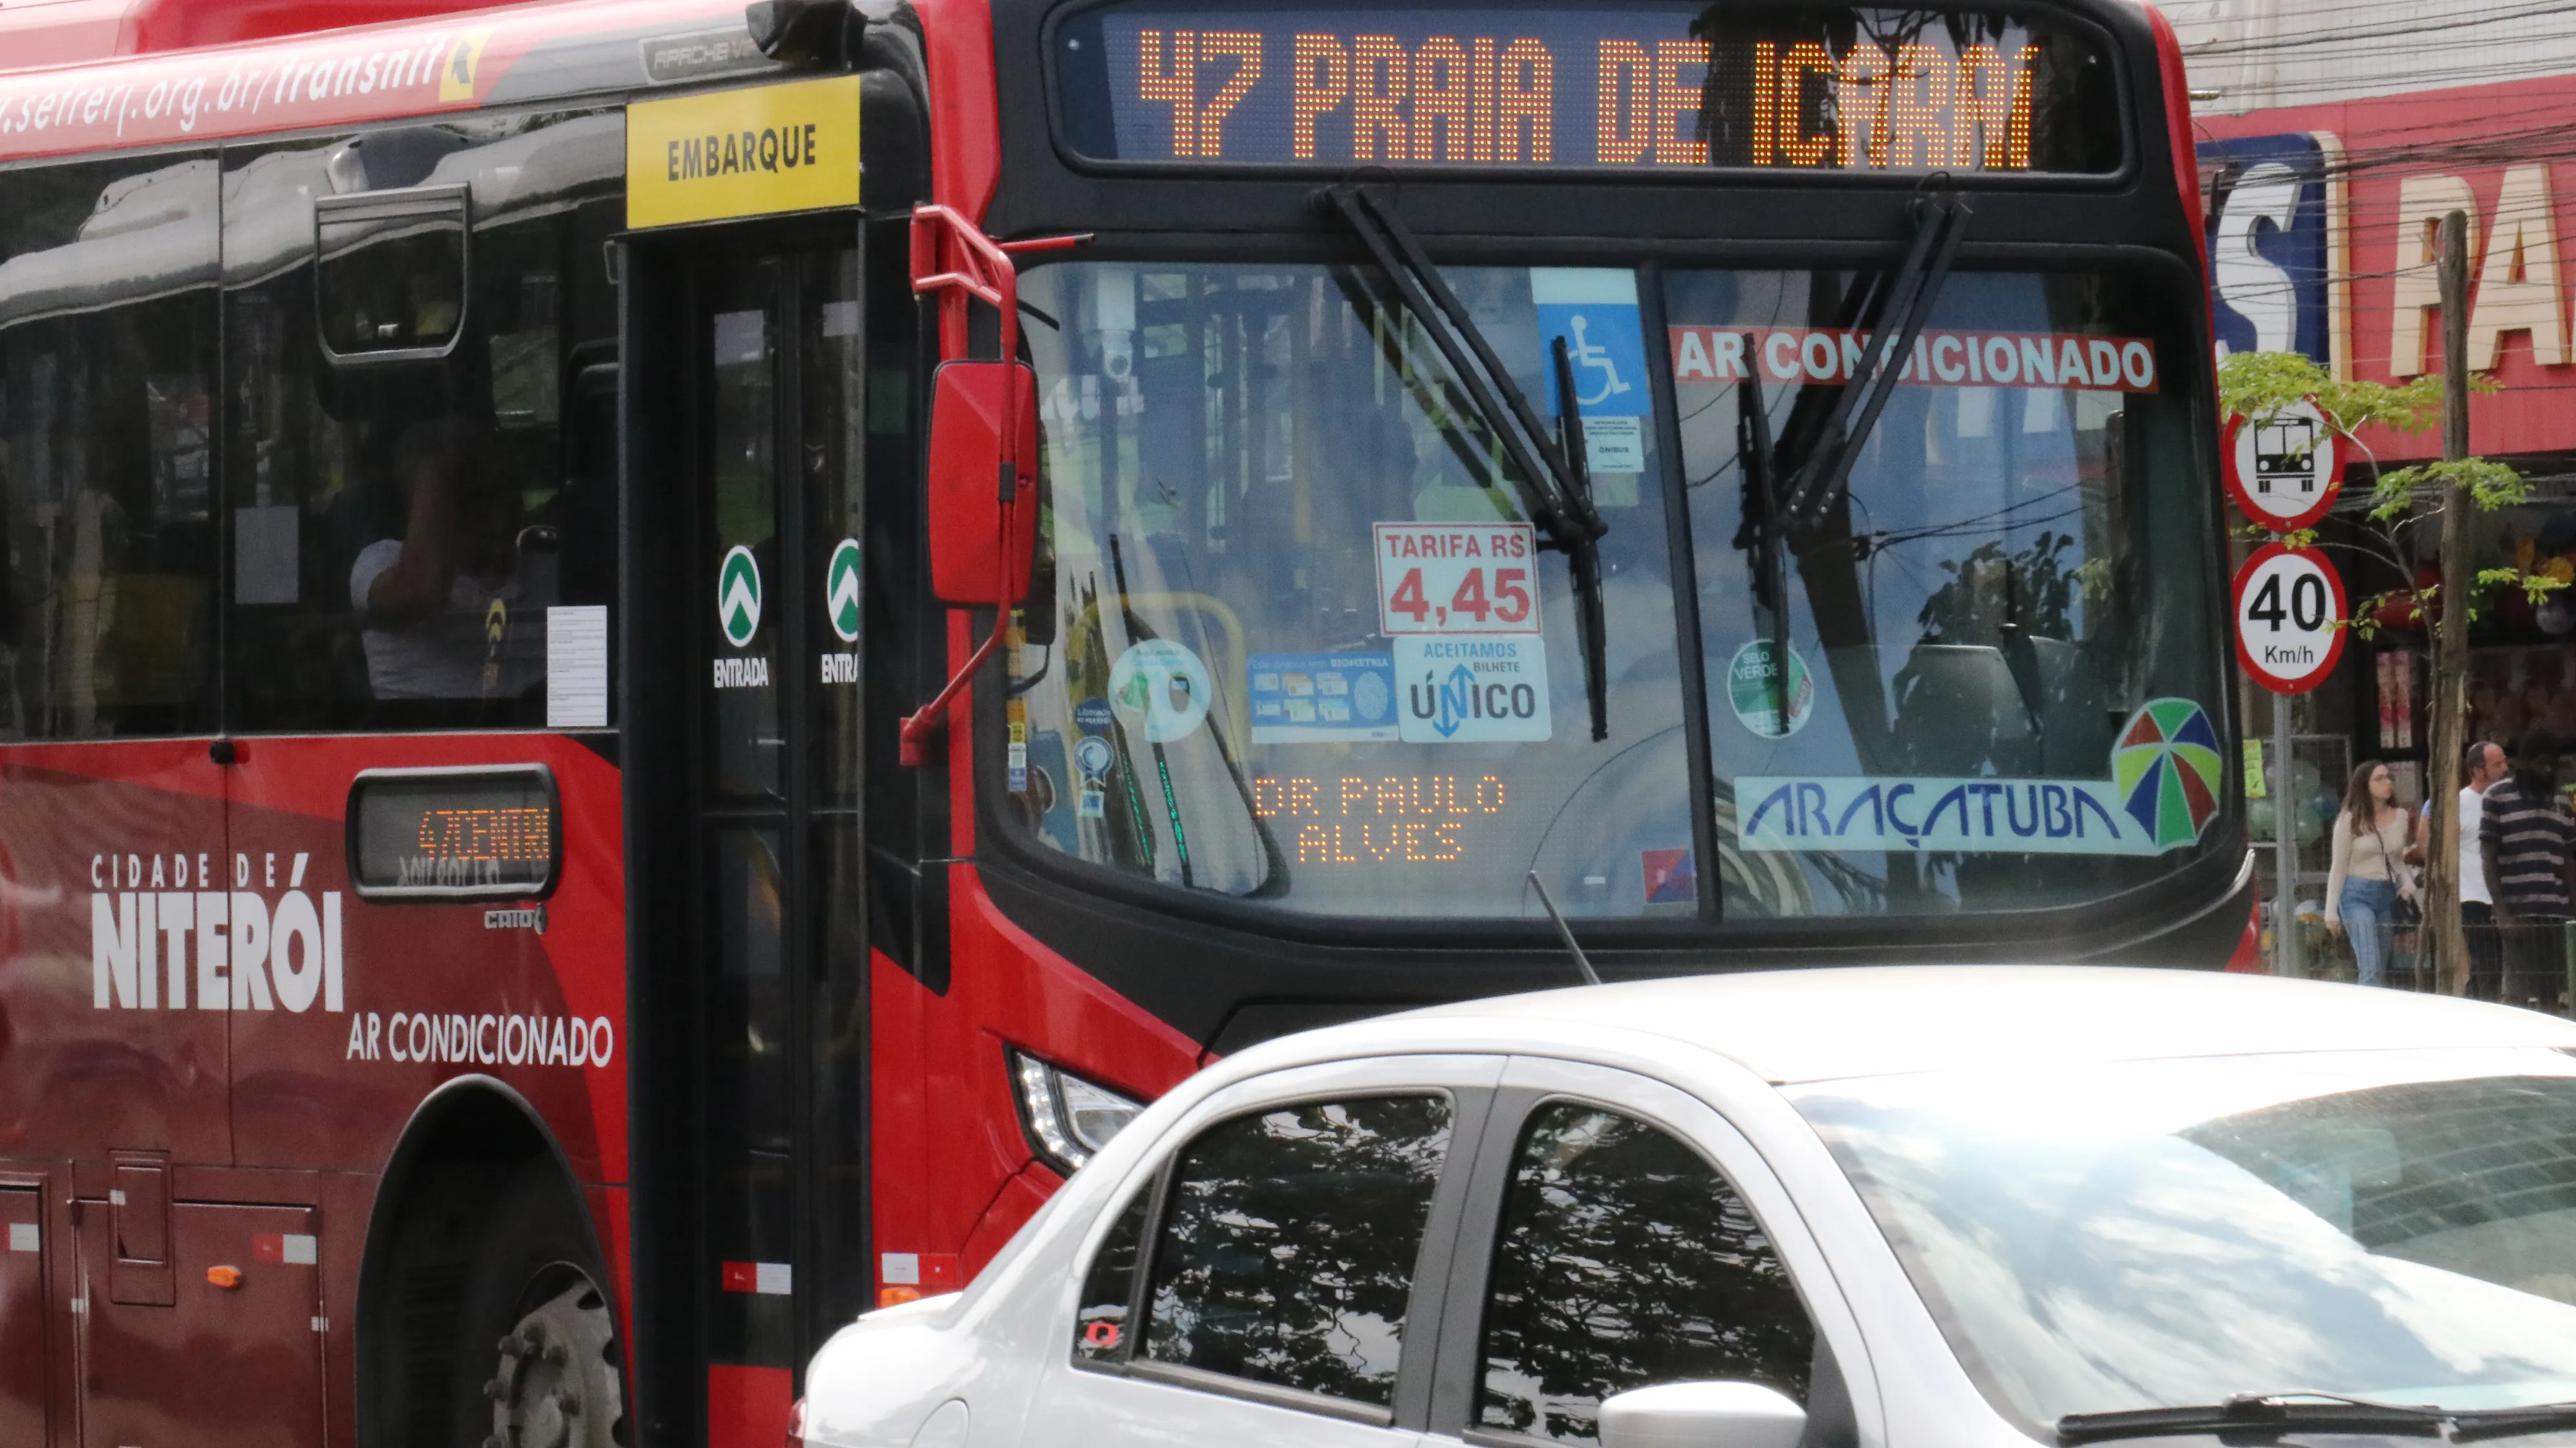 Ônibus da linha 47, da viação Araçatuba, já exibia o novo valor de R$ 4,45